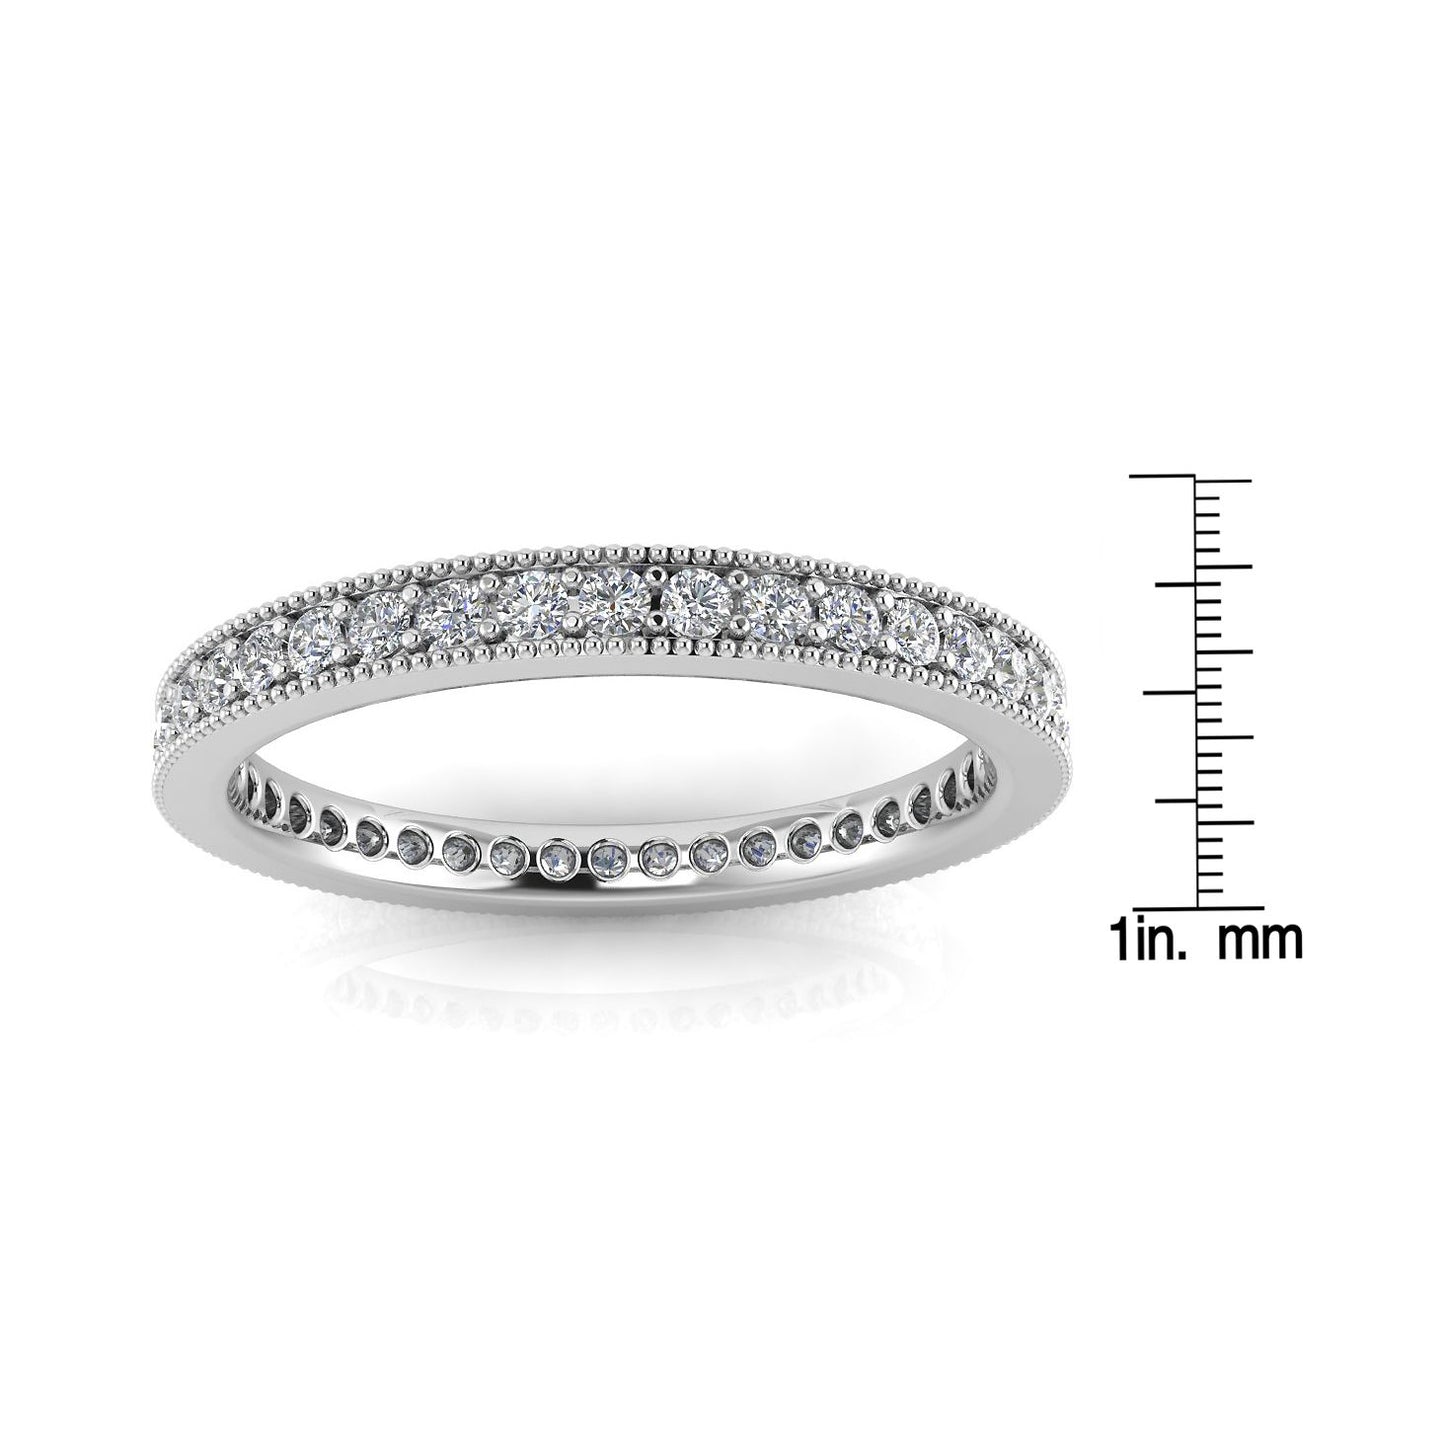 Round Brilliant Cut Diamond Pave & Milgrain Set Eternity Ring In Platinum  (0.3ct. Tw.) Ring Size 5